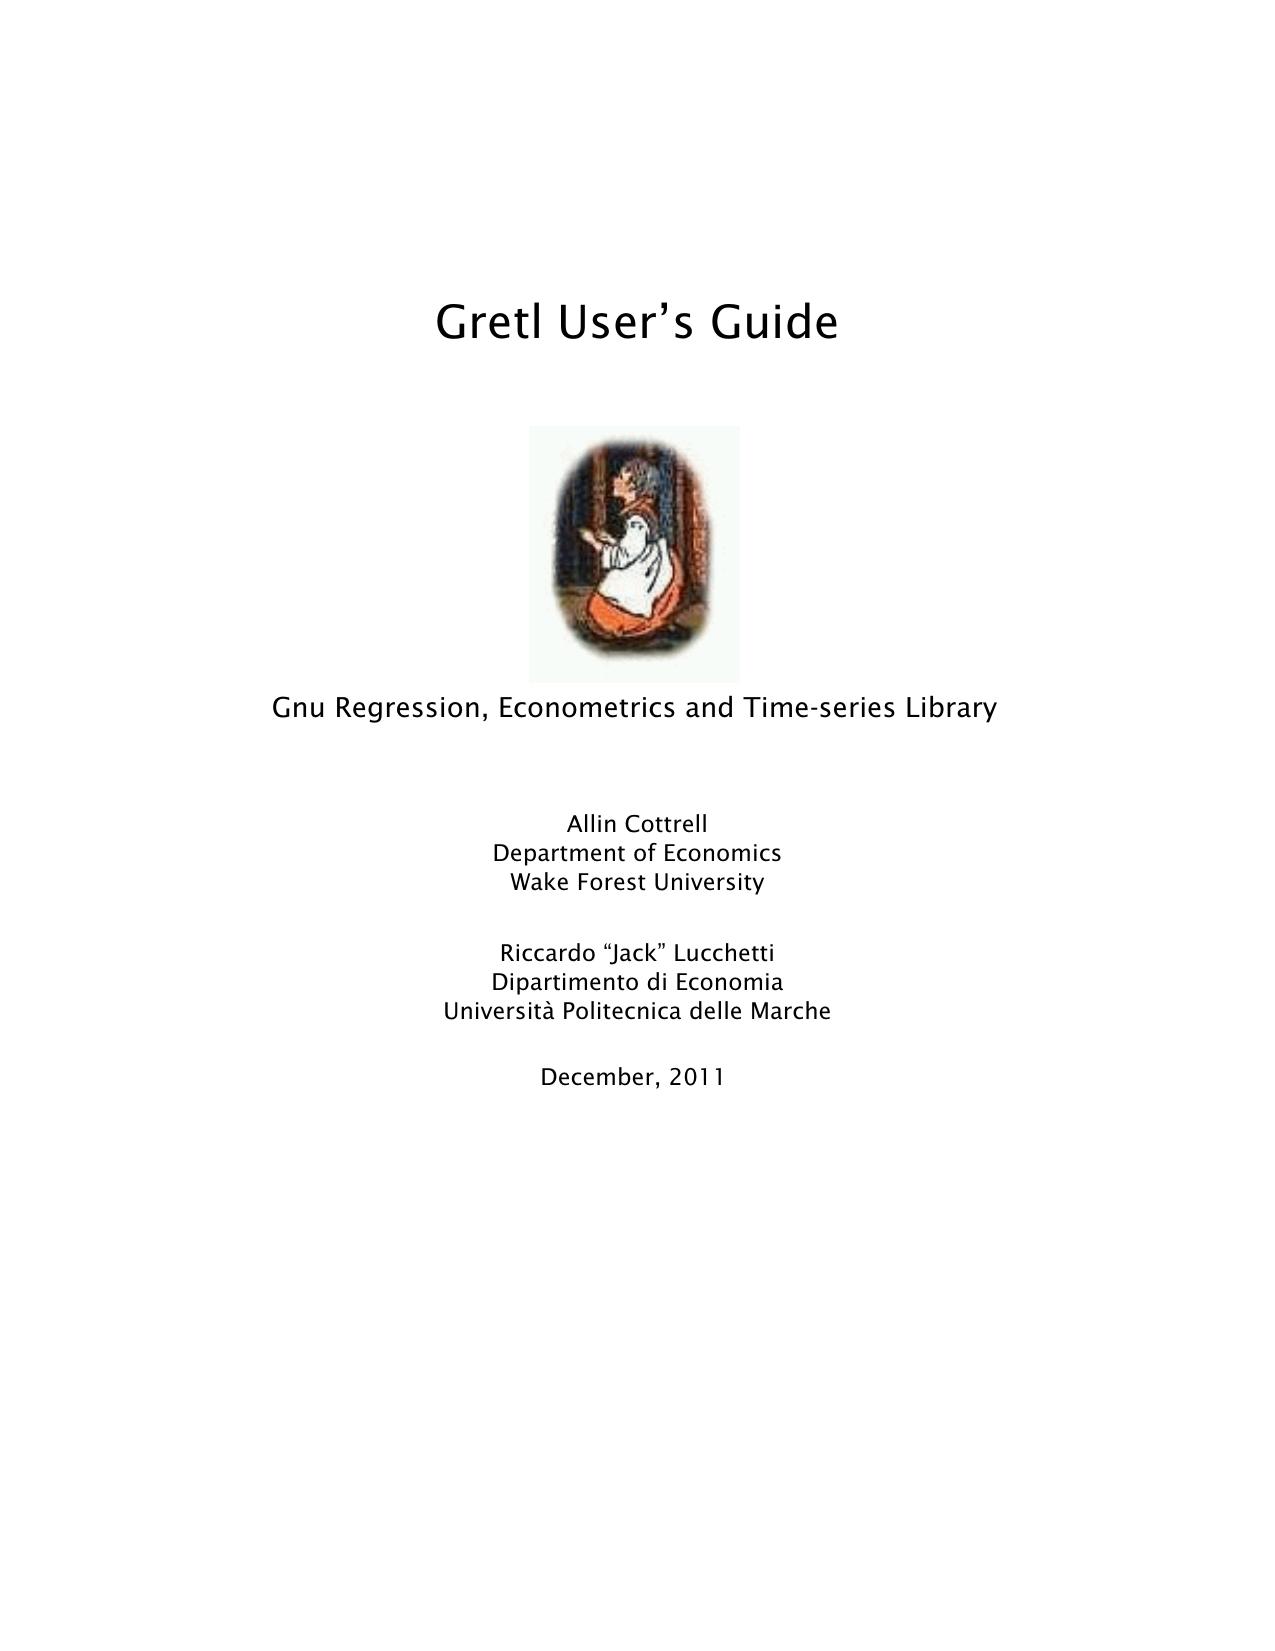 Gretl User's Guide